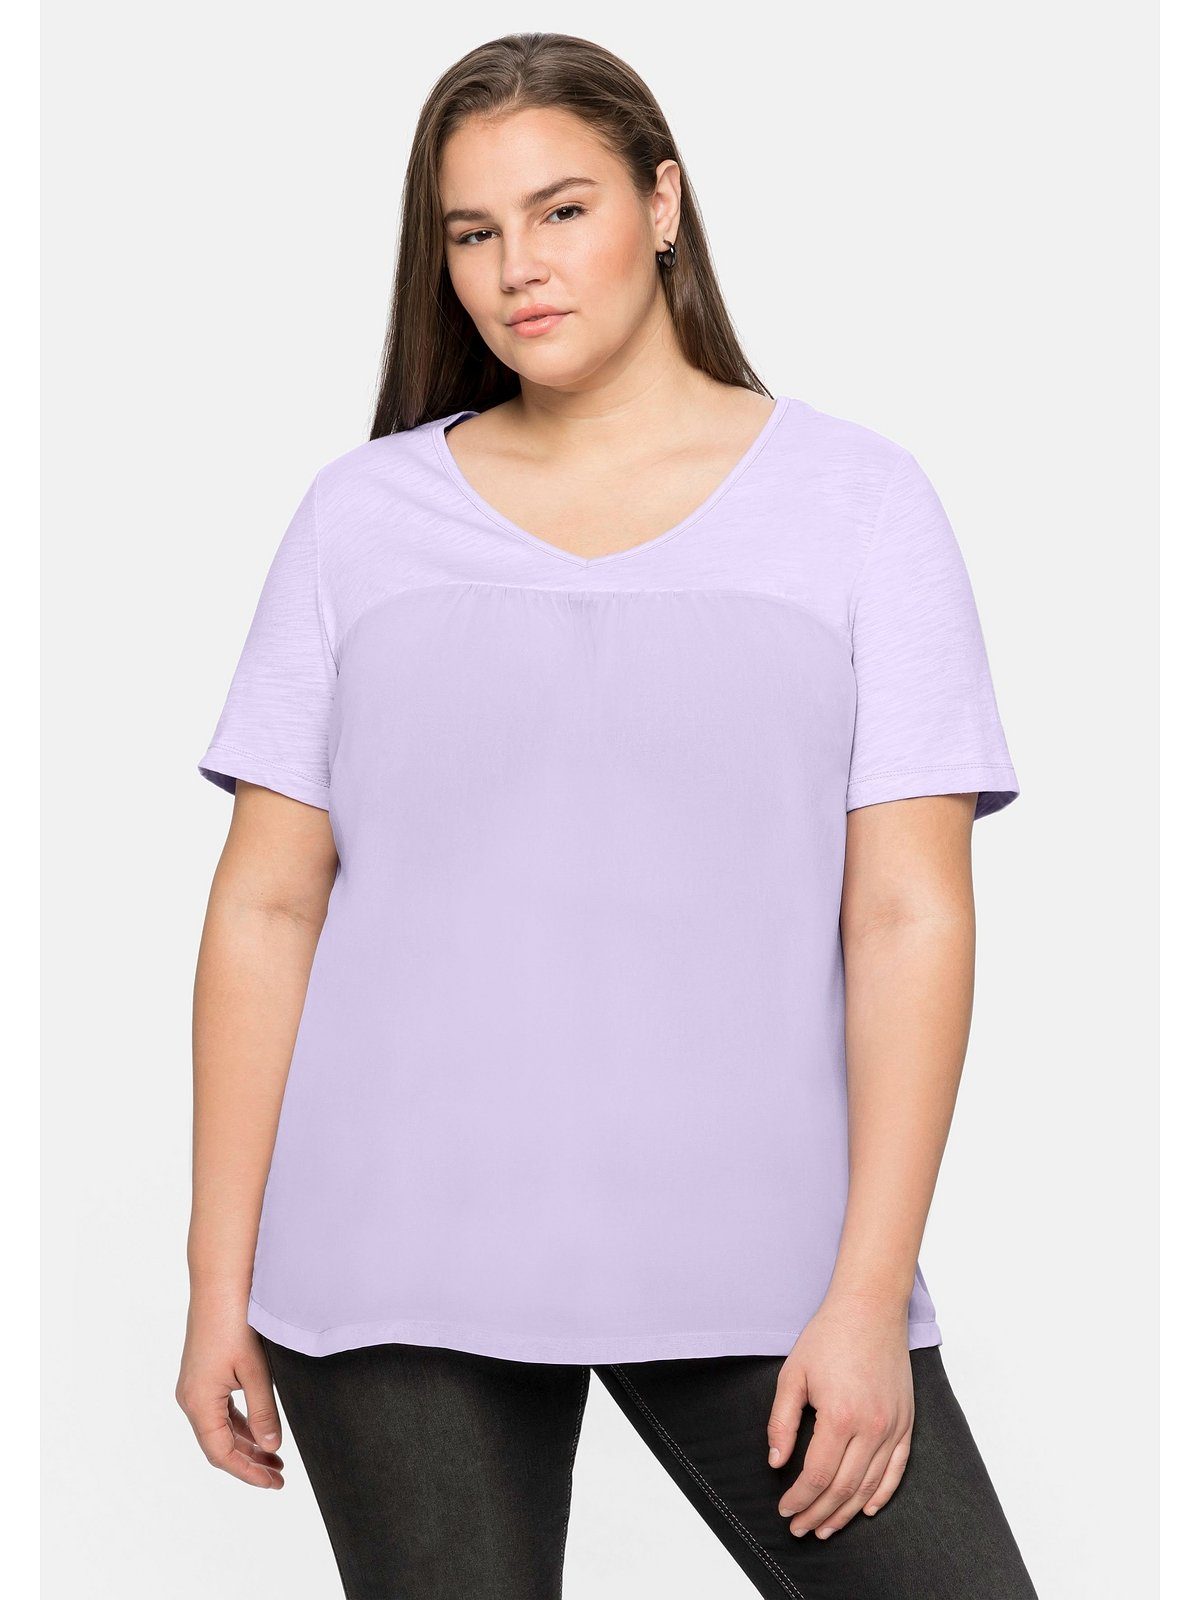 Sheego T-Shirt Große Größen im Materialmix, in A-Linie